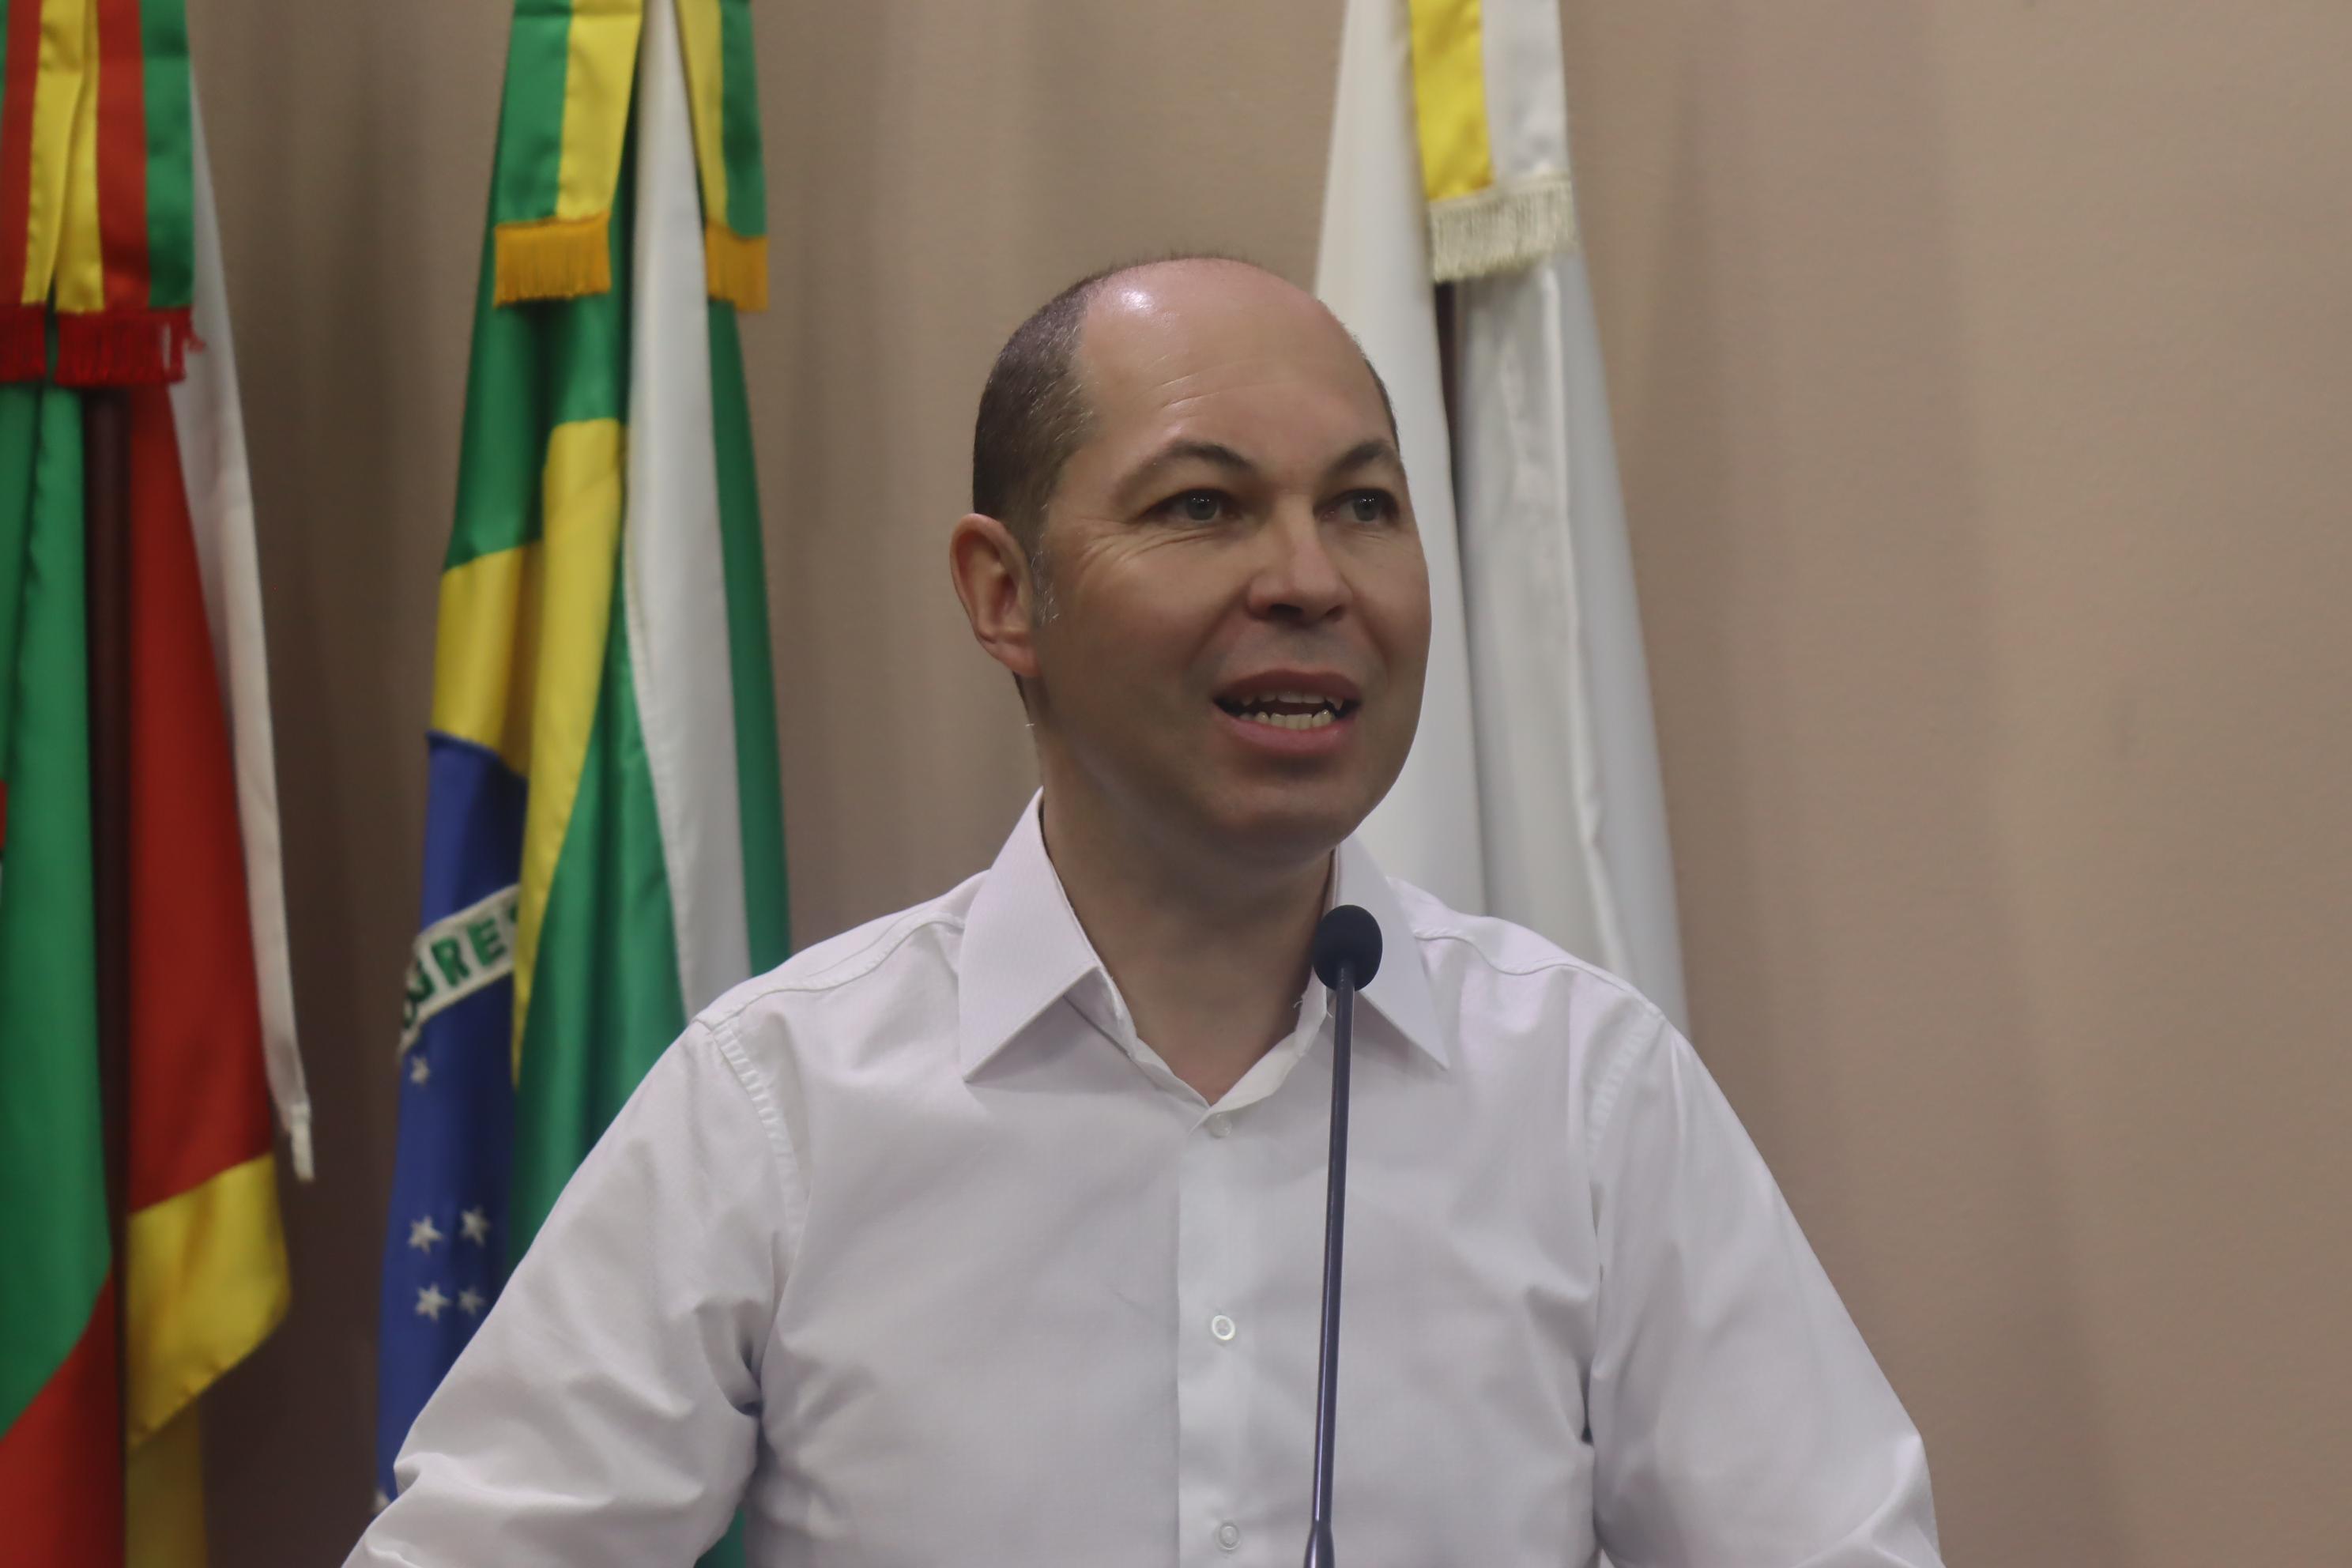 Semana Municipal Naiara Soares Gomes está em análise na Câmara